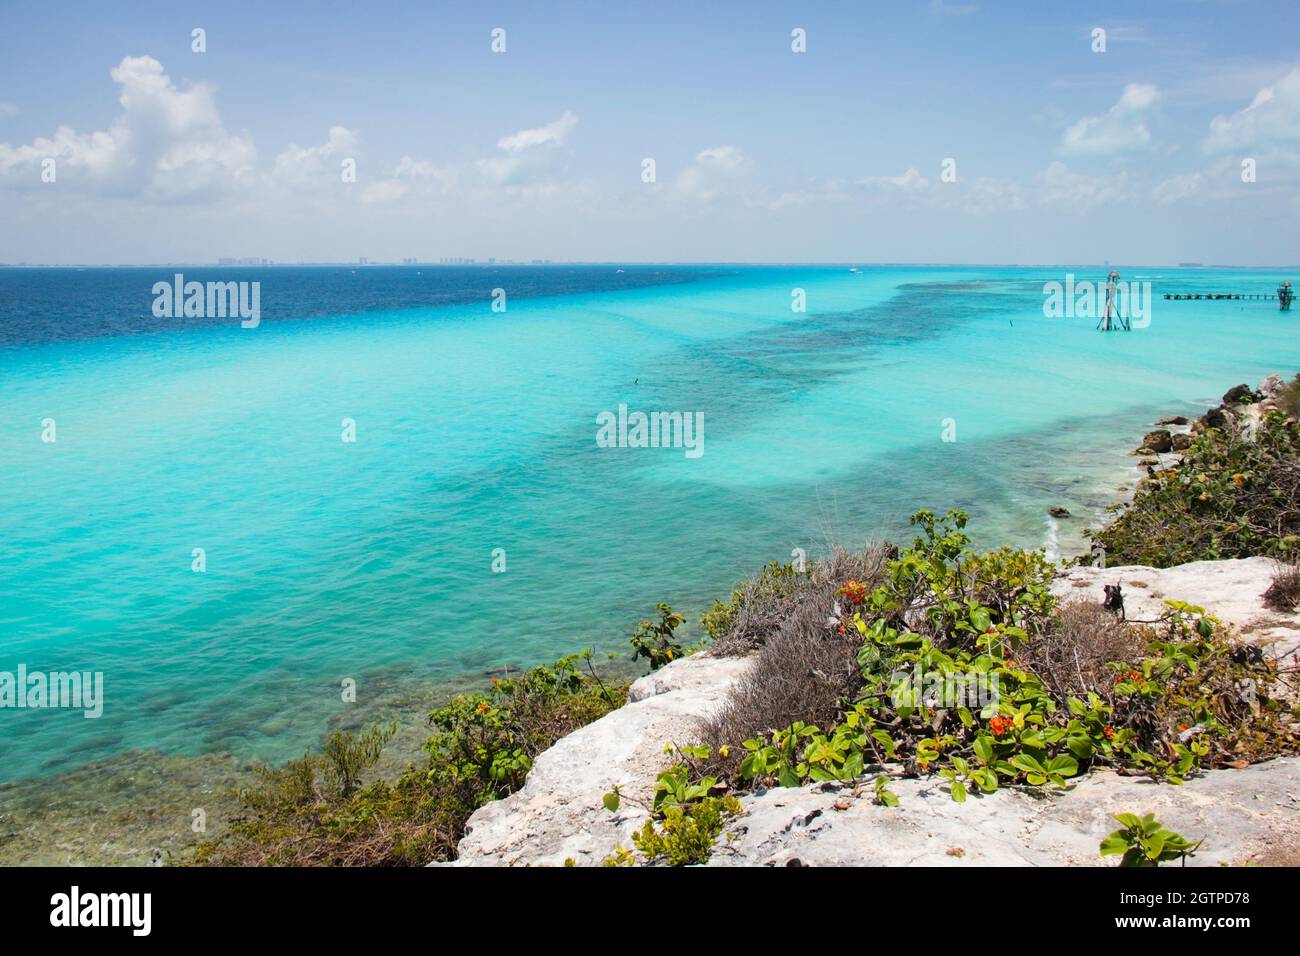 Magnifiche vedute del Mar dei Caraibi di acque turchesi e blu dall'isola di Isla Mujeres, Messico. Paradiso esotico, concetto di destinazione di viaggio vacanza Foto Stock